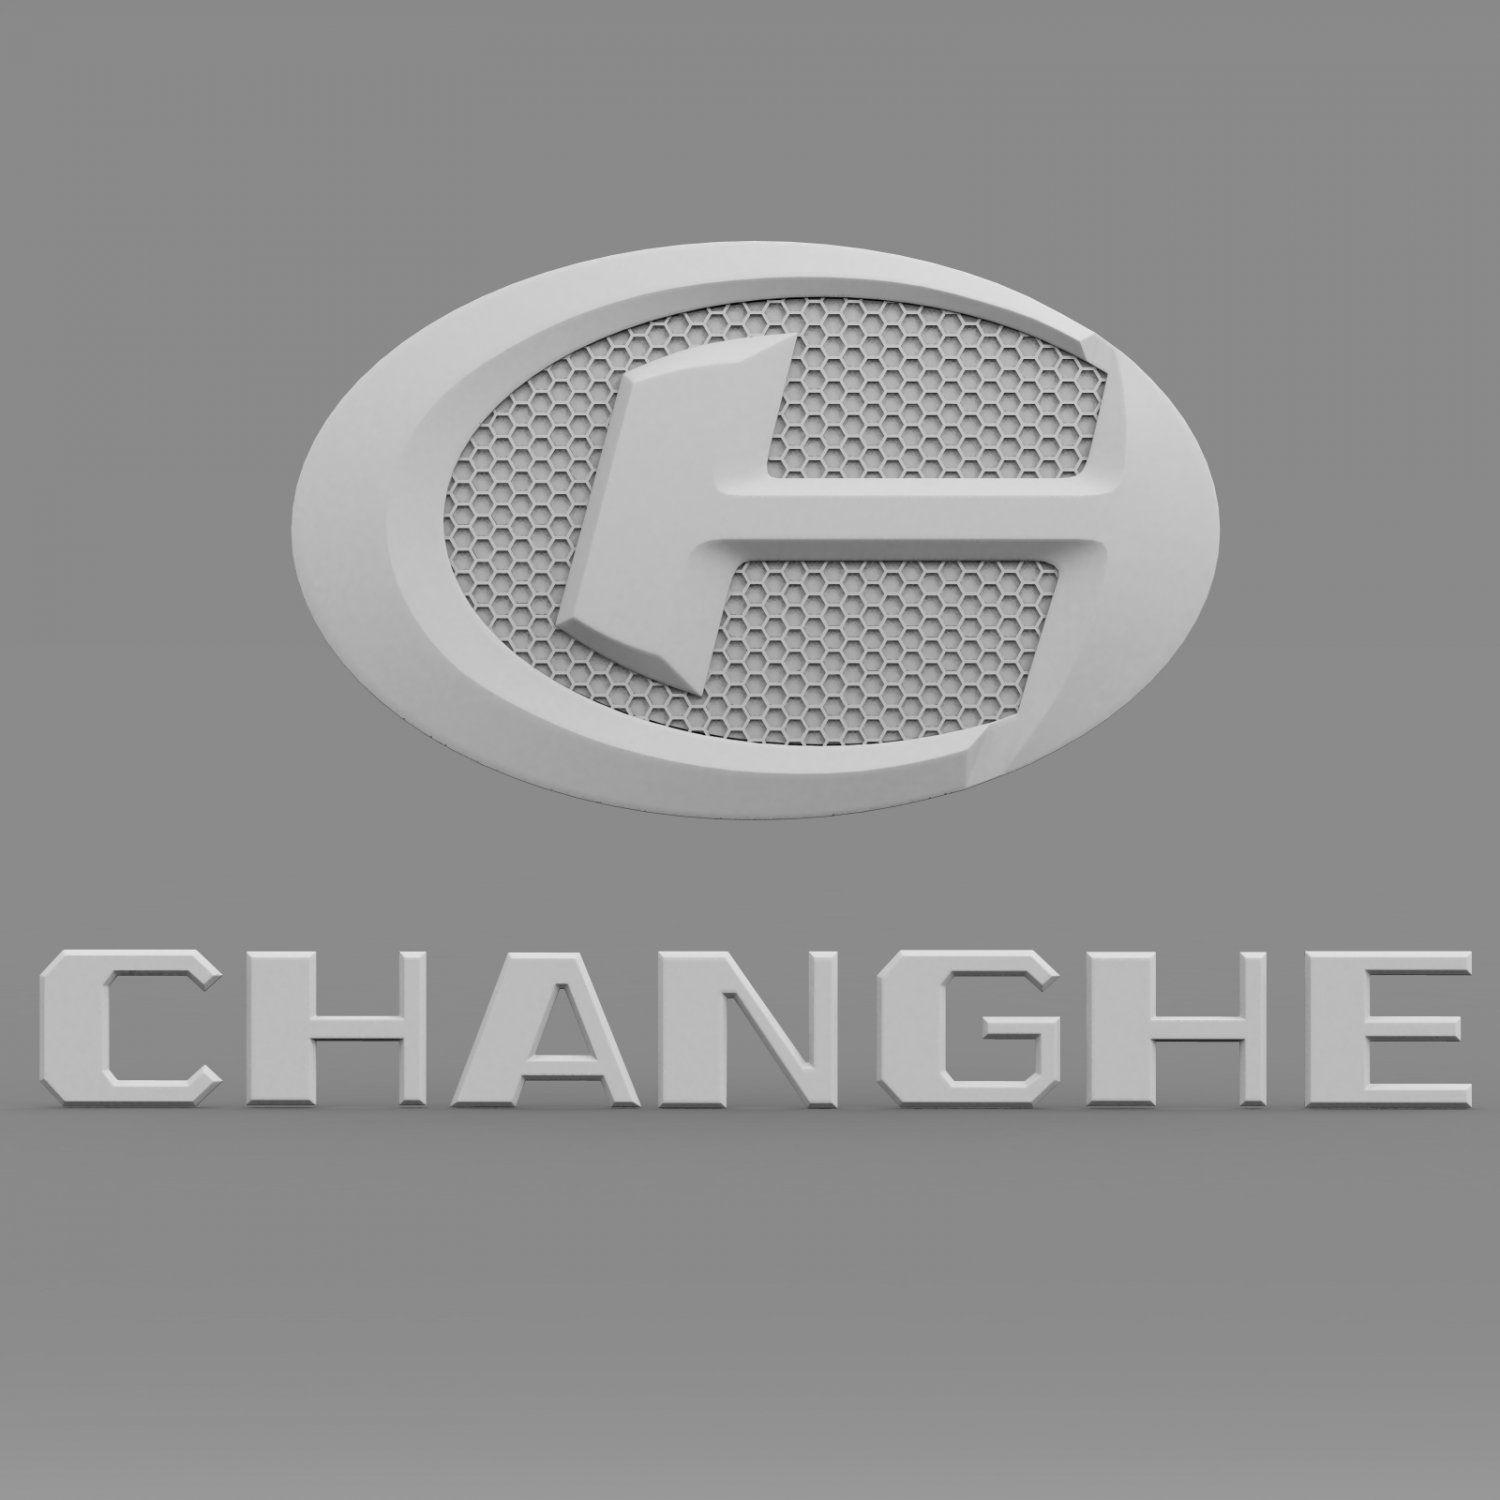 Changhe Logo - Changhe logo 3D Model in Parts of auto 3DExport